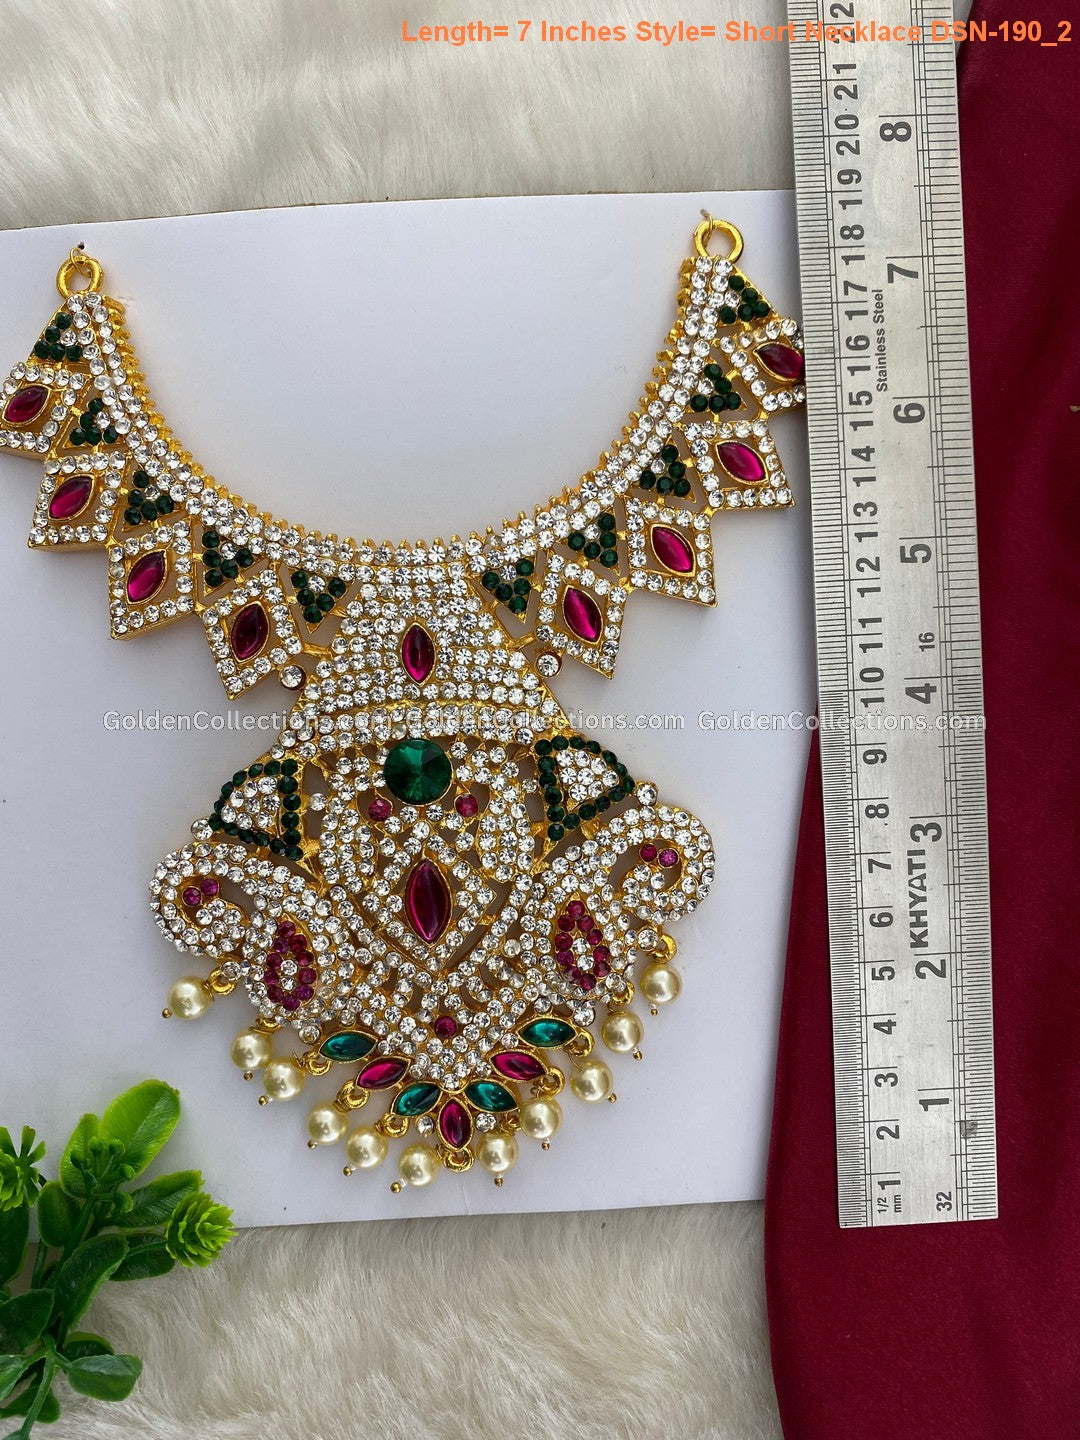 Goddess Lakshmi Jewellery - Buy Deity Short Haram Online - DSN-190 2